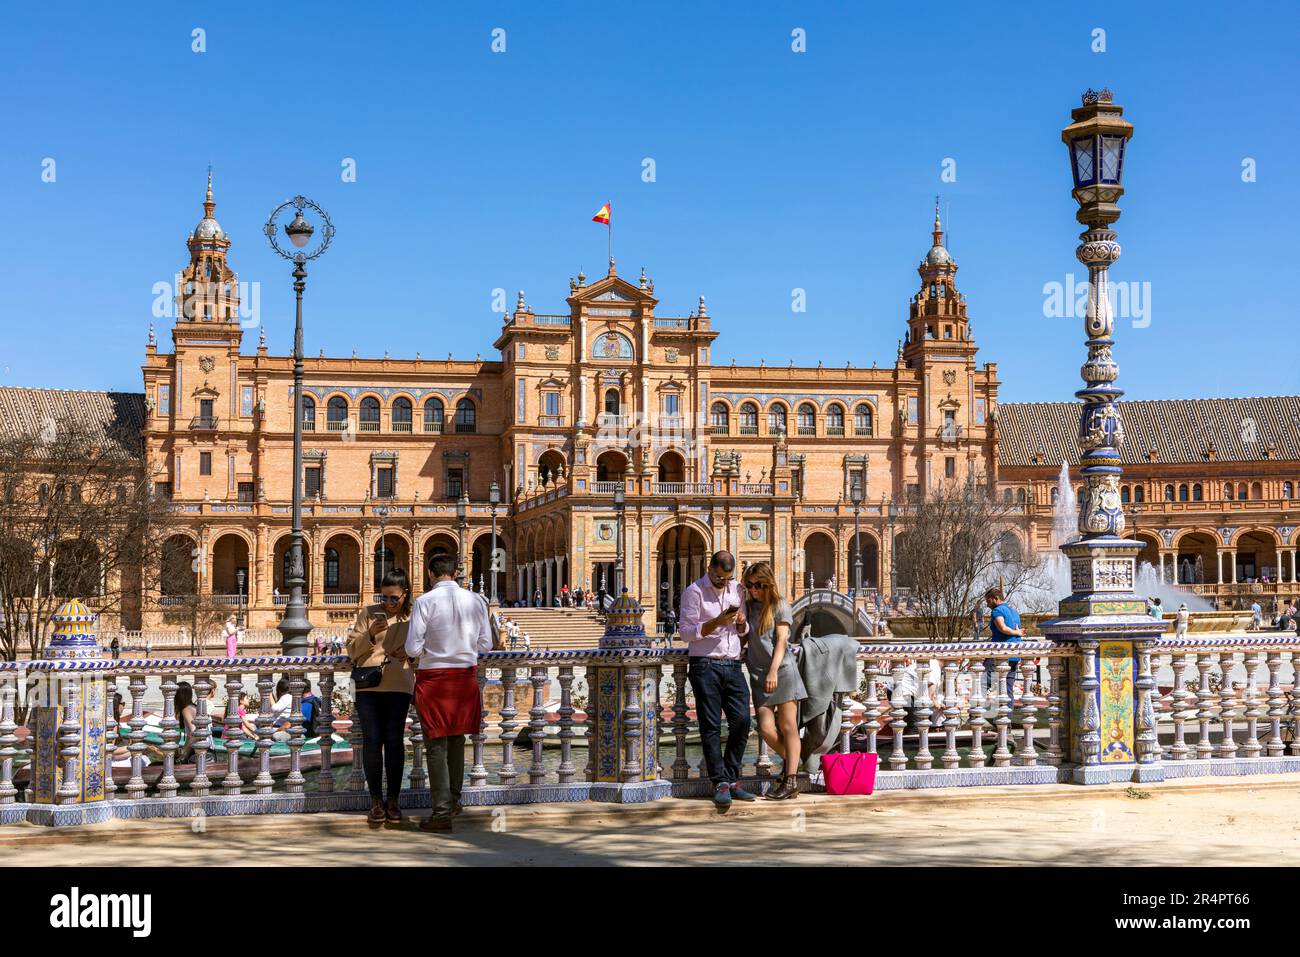 Spanien, Sevilla, Plaza de Espana, plaza im Maria Luisa Park, das Prinzip im „maurischen paradischen Stil“, um Spaniens Industrie und Technologie zu präsentieren Stockfoto